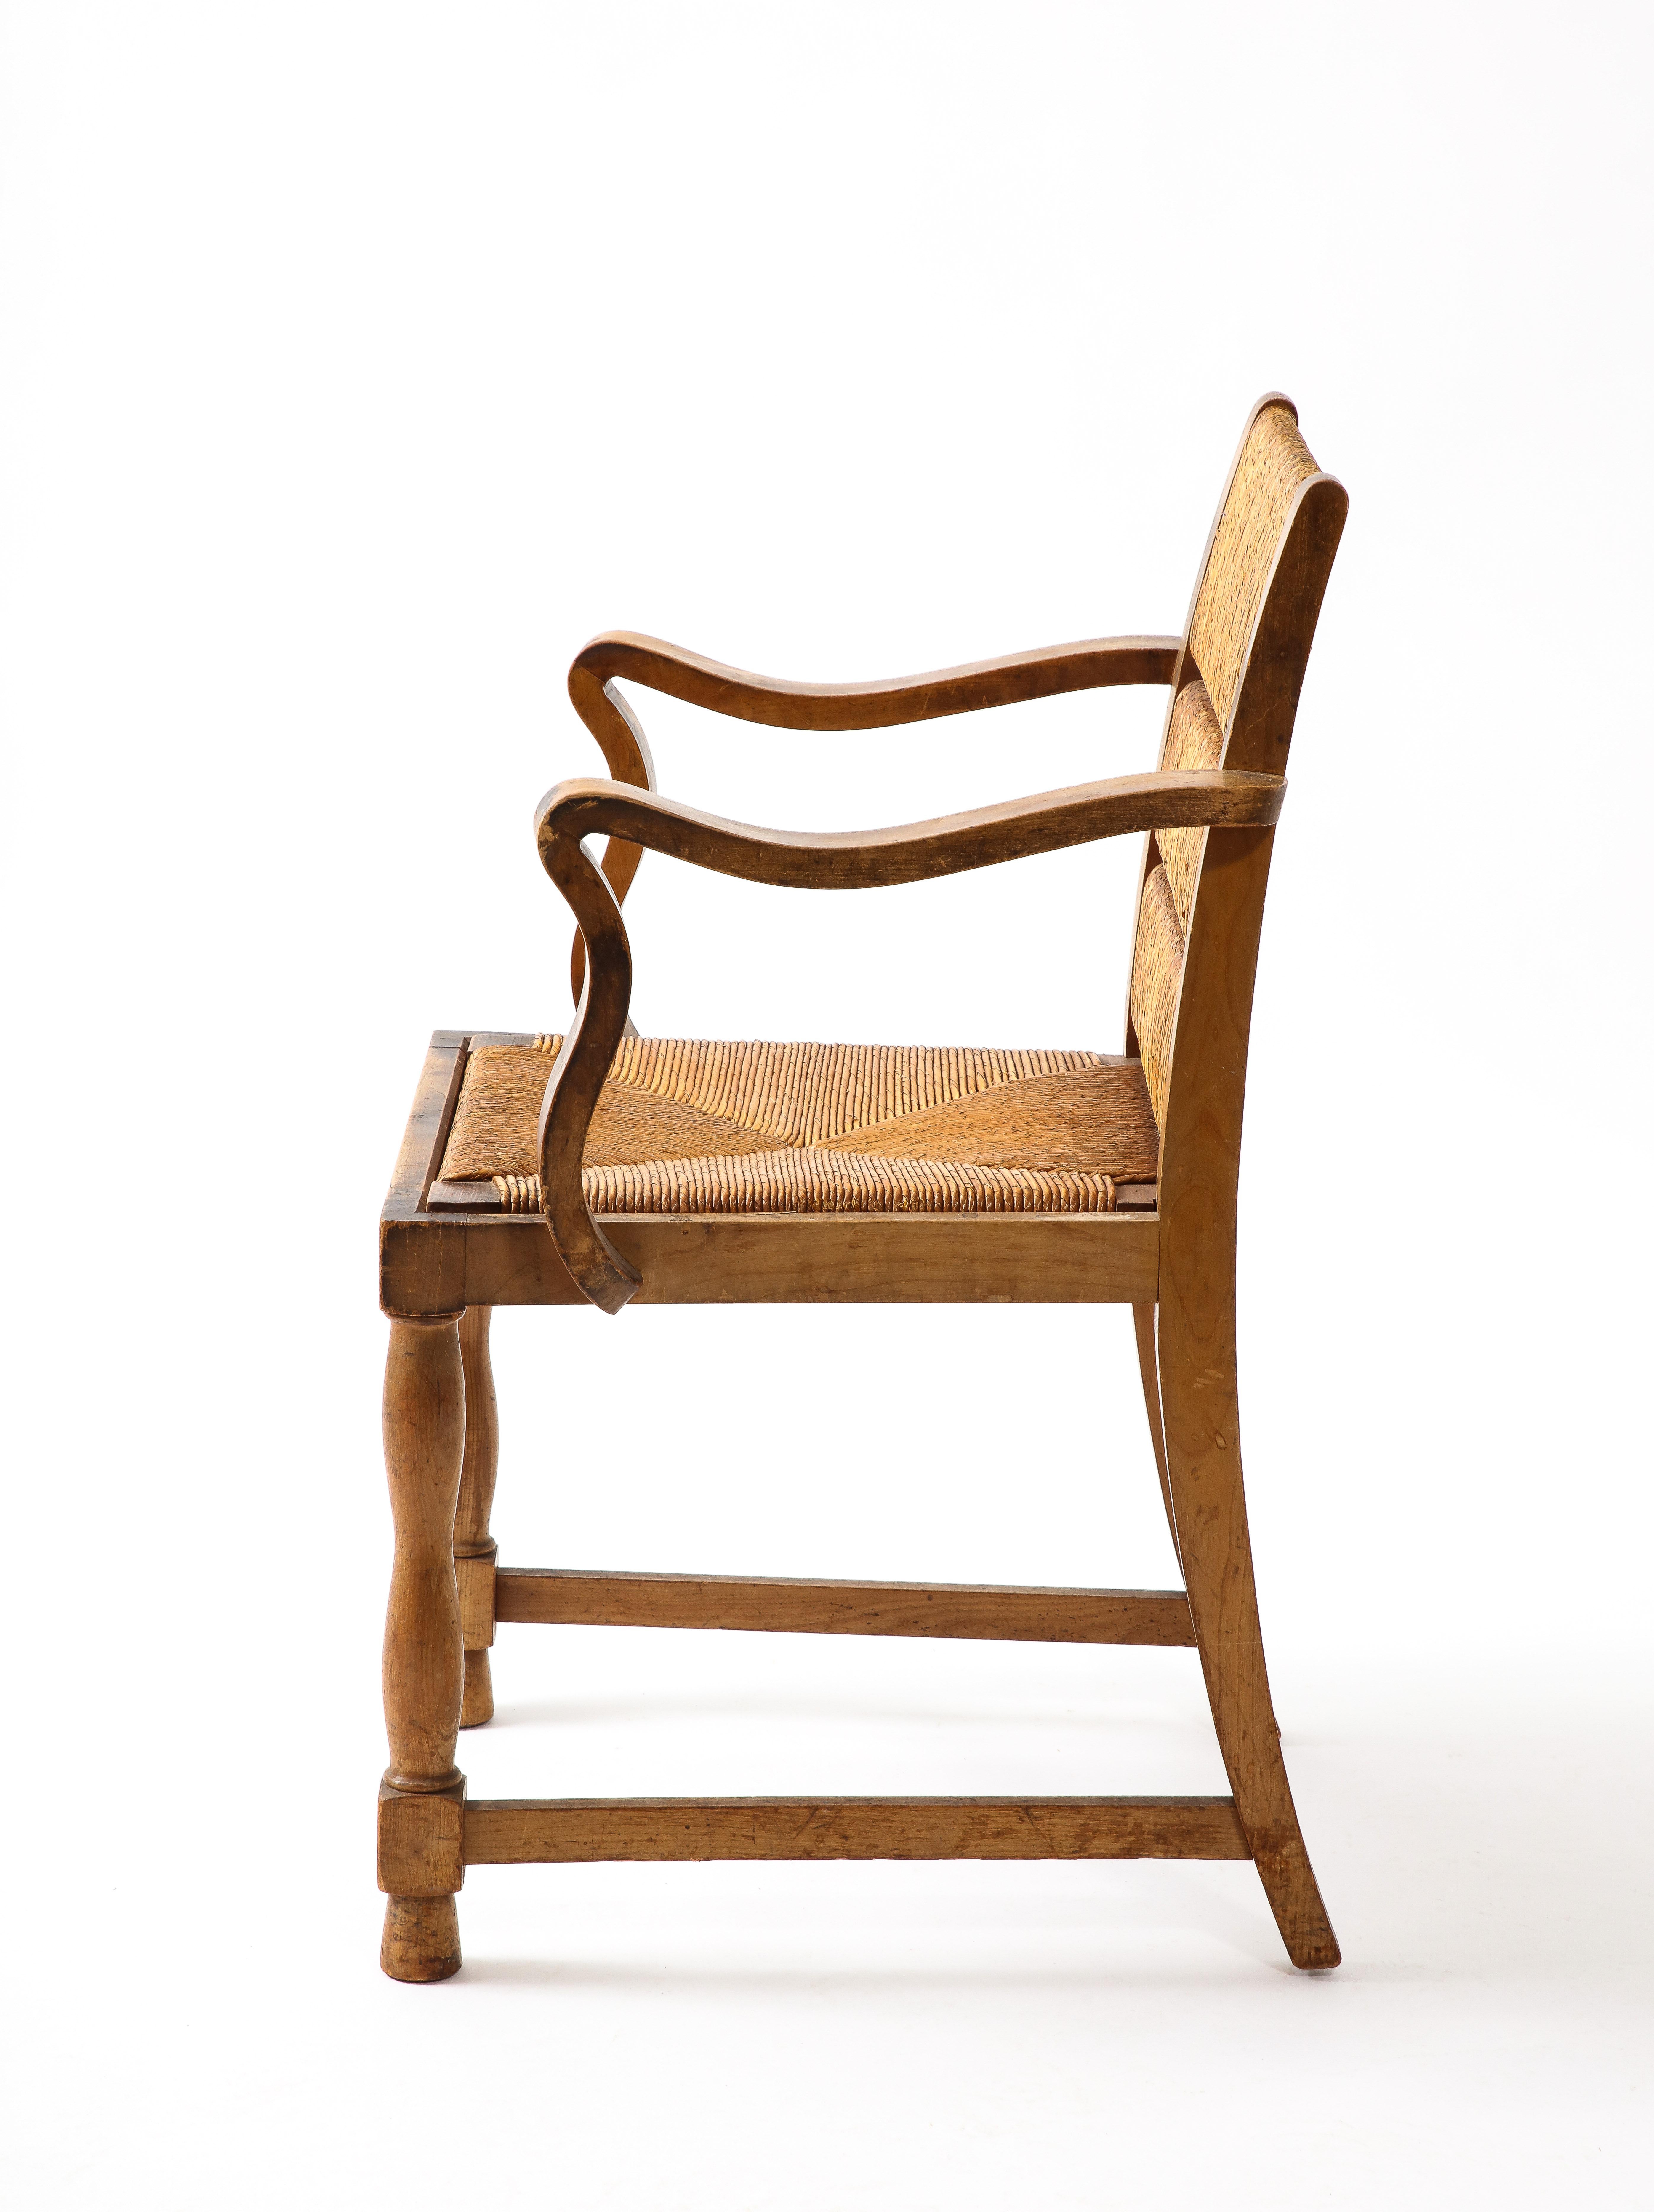 Elégant ensemble de quatre fauteuils en Eleg à accoudoirs en forme de trèfle, les dossiers divisés en sections conservent leur finition d'origine en jonc.